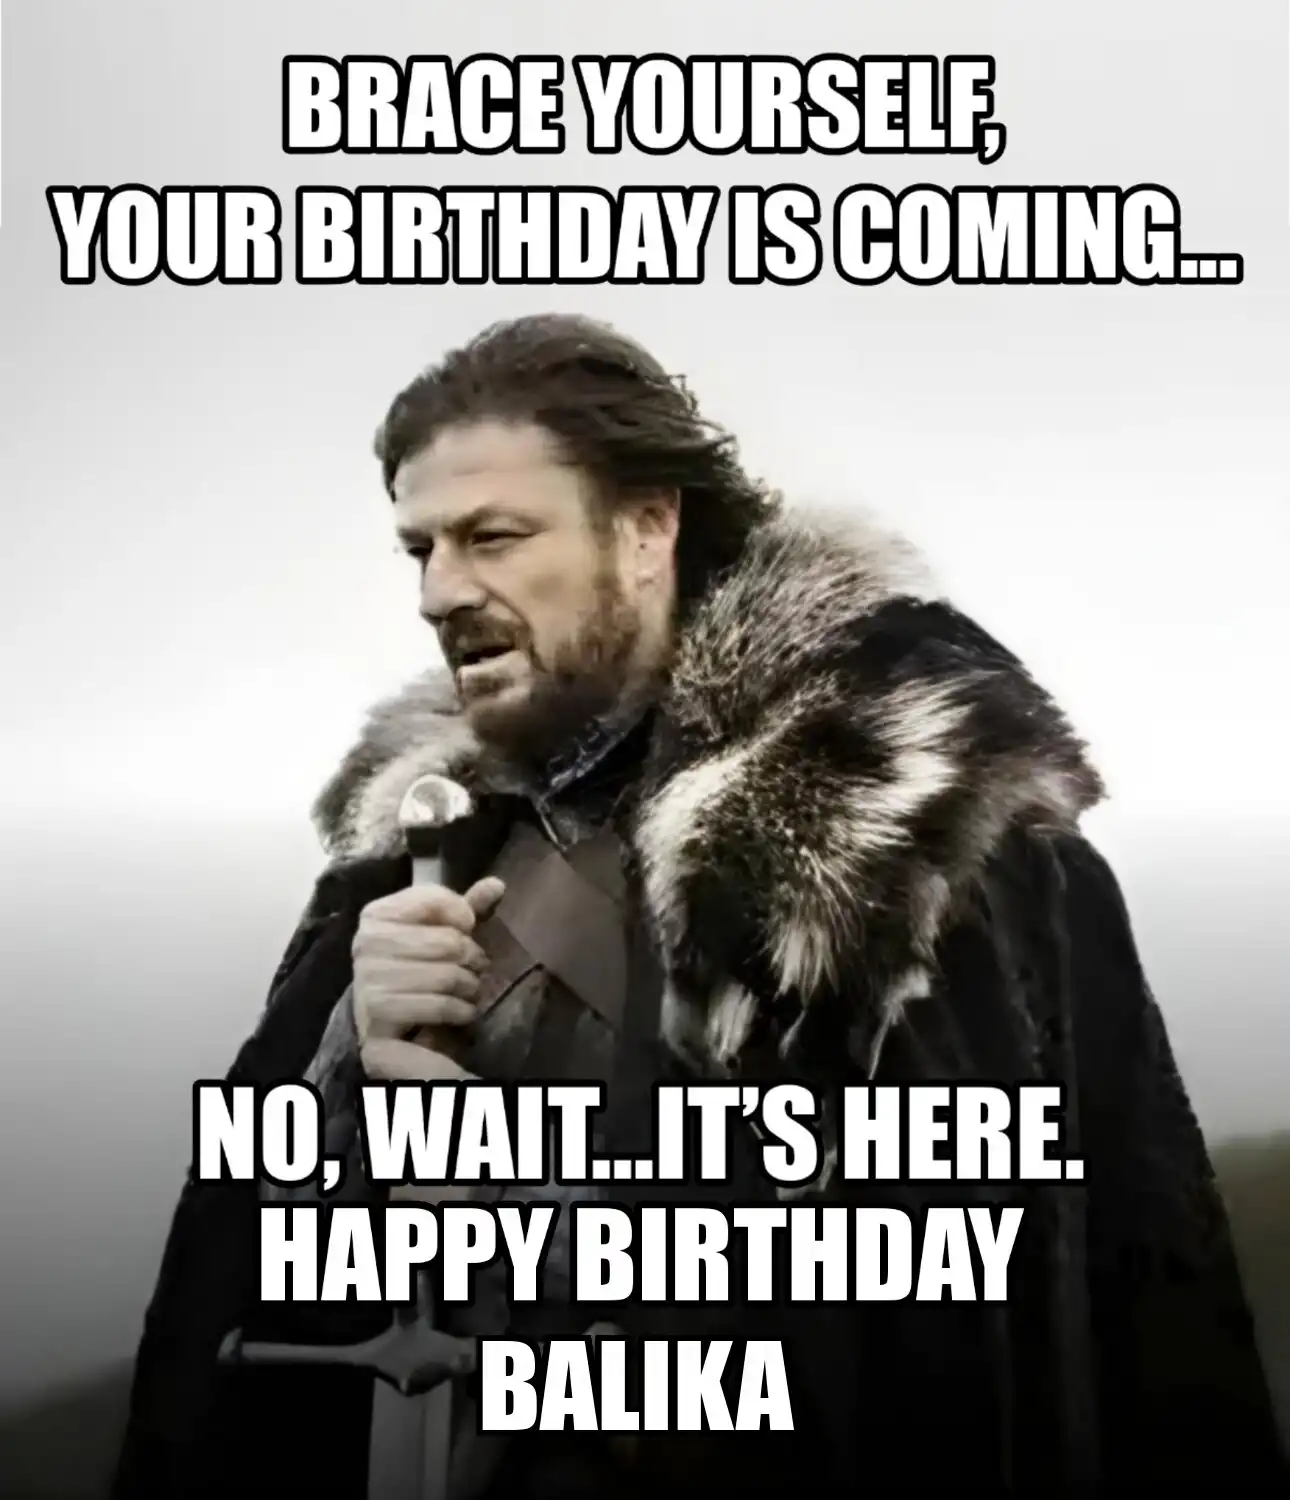 Happy Birthday Balika Brace Yourself Your Birthday Is Coming Meme